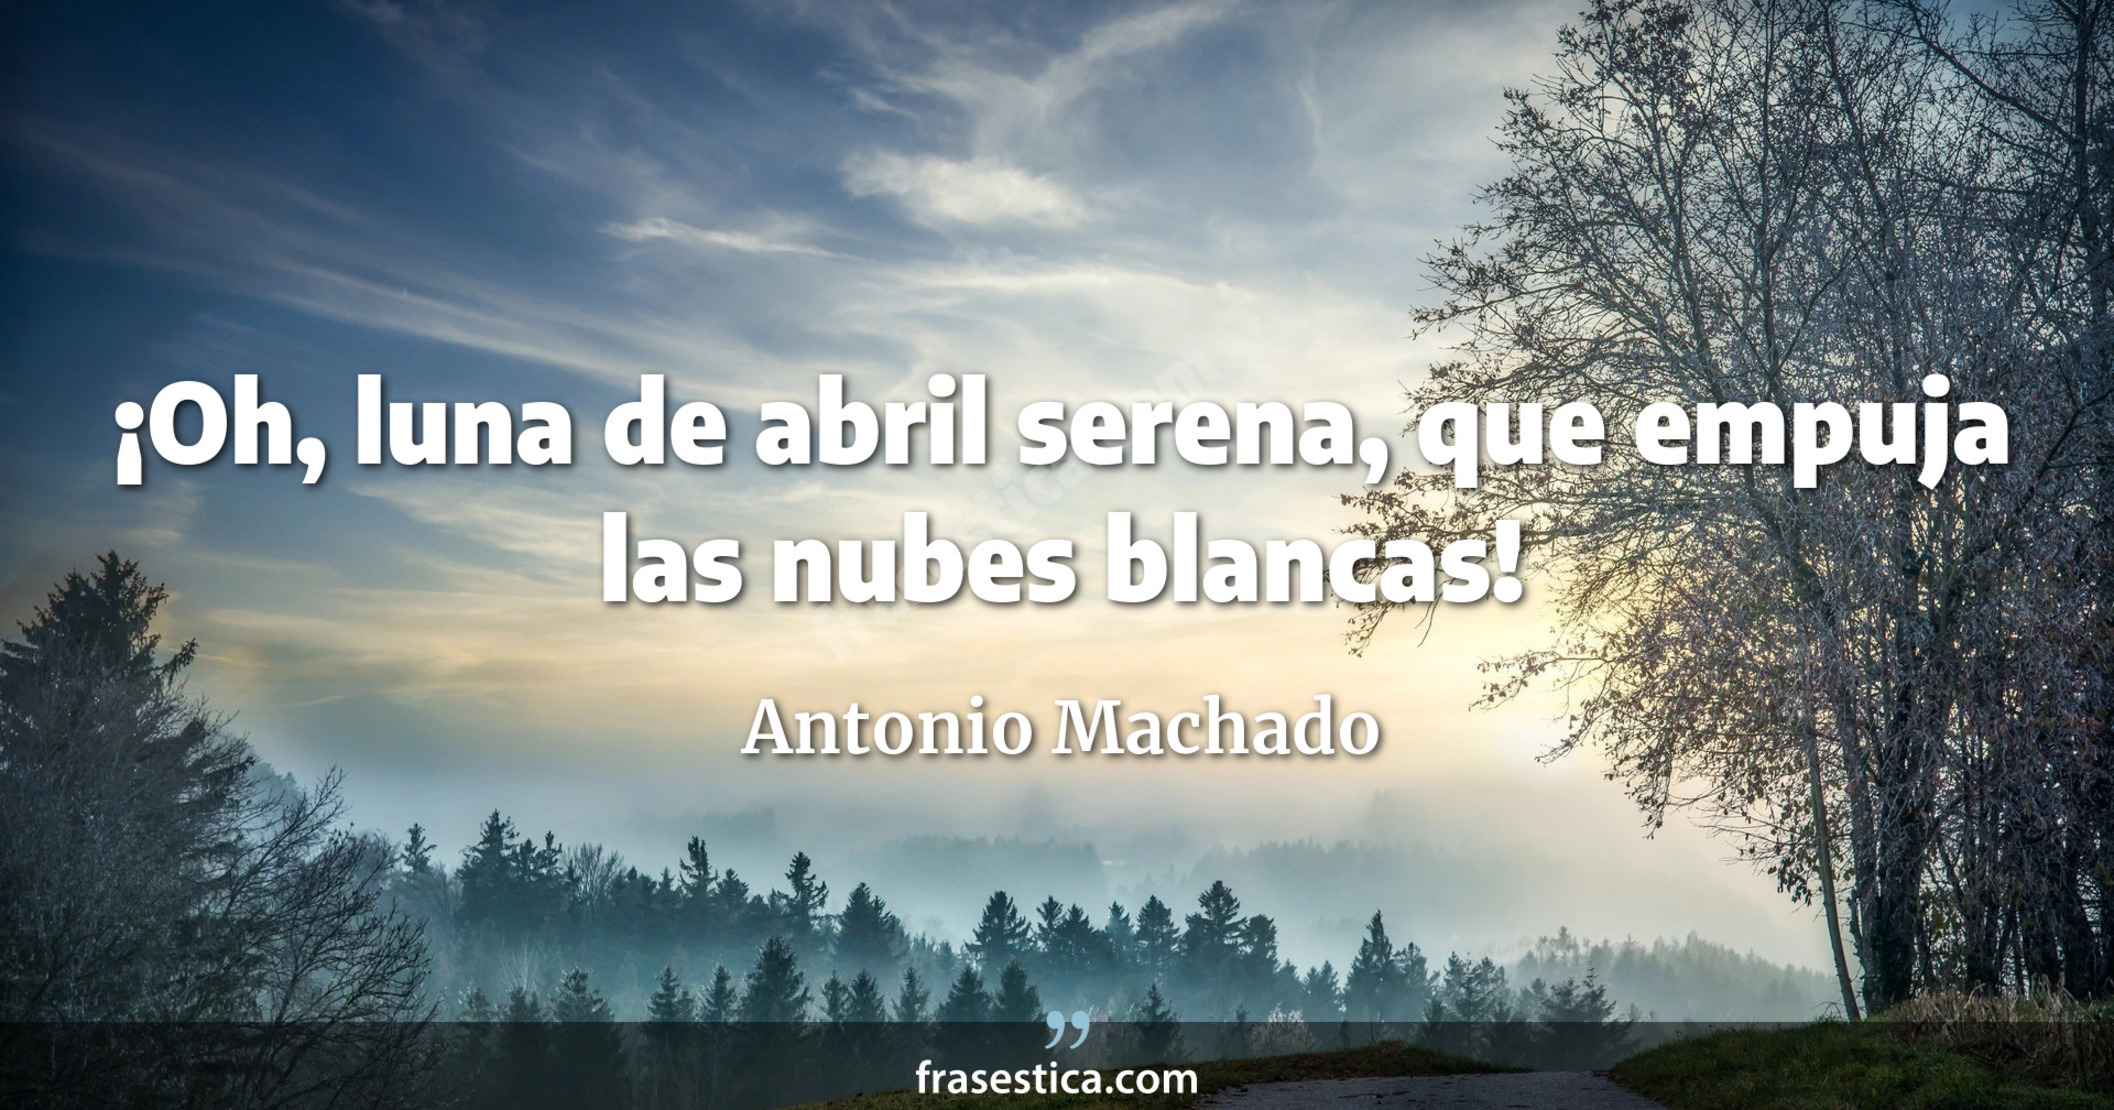 ¡Oh, luna de abril serena, que empuja las nubes blancas! - Antonio Machado